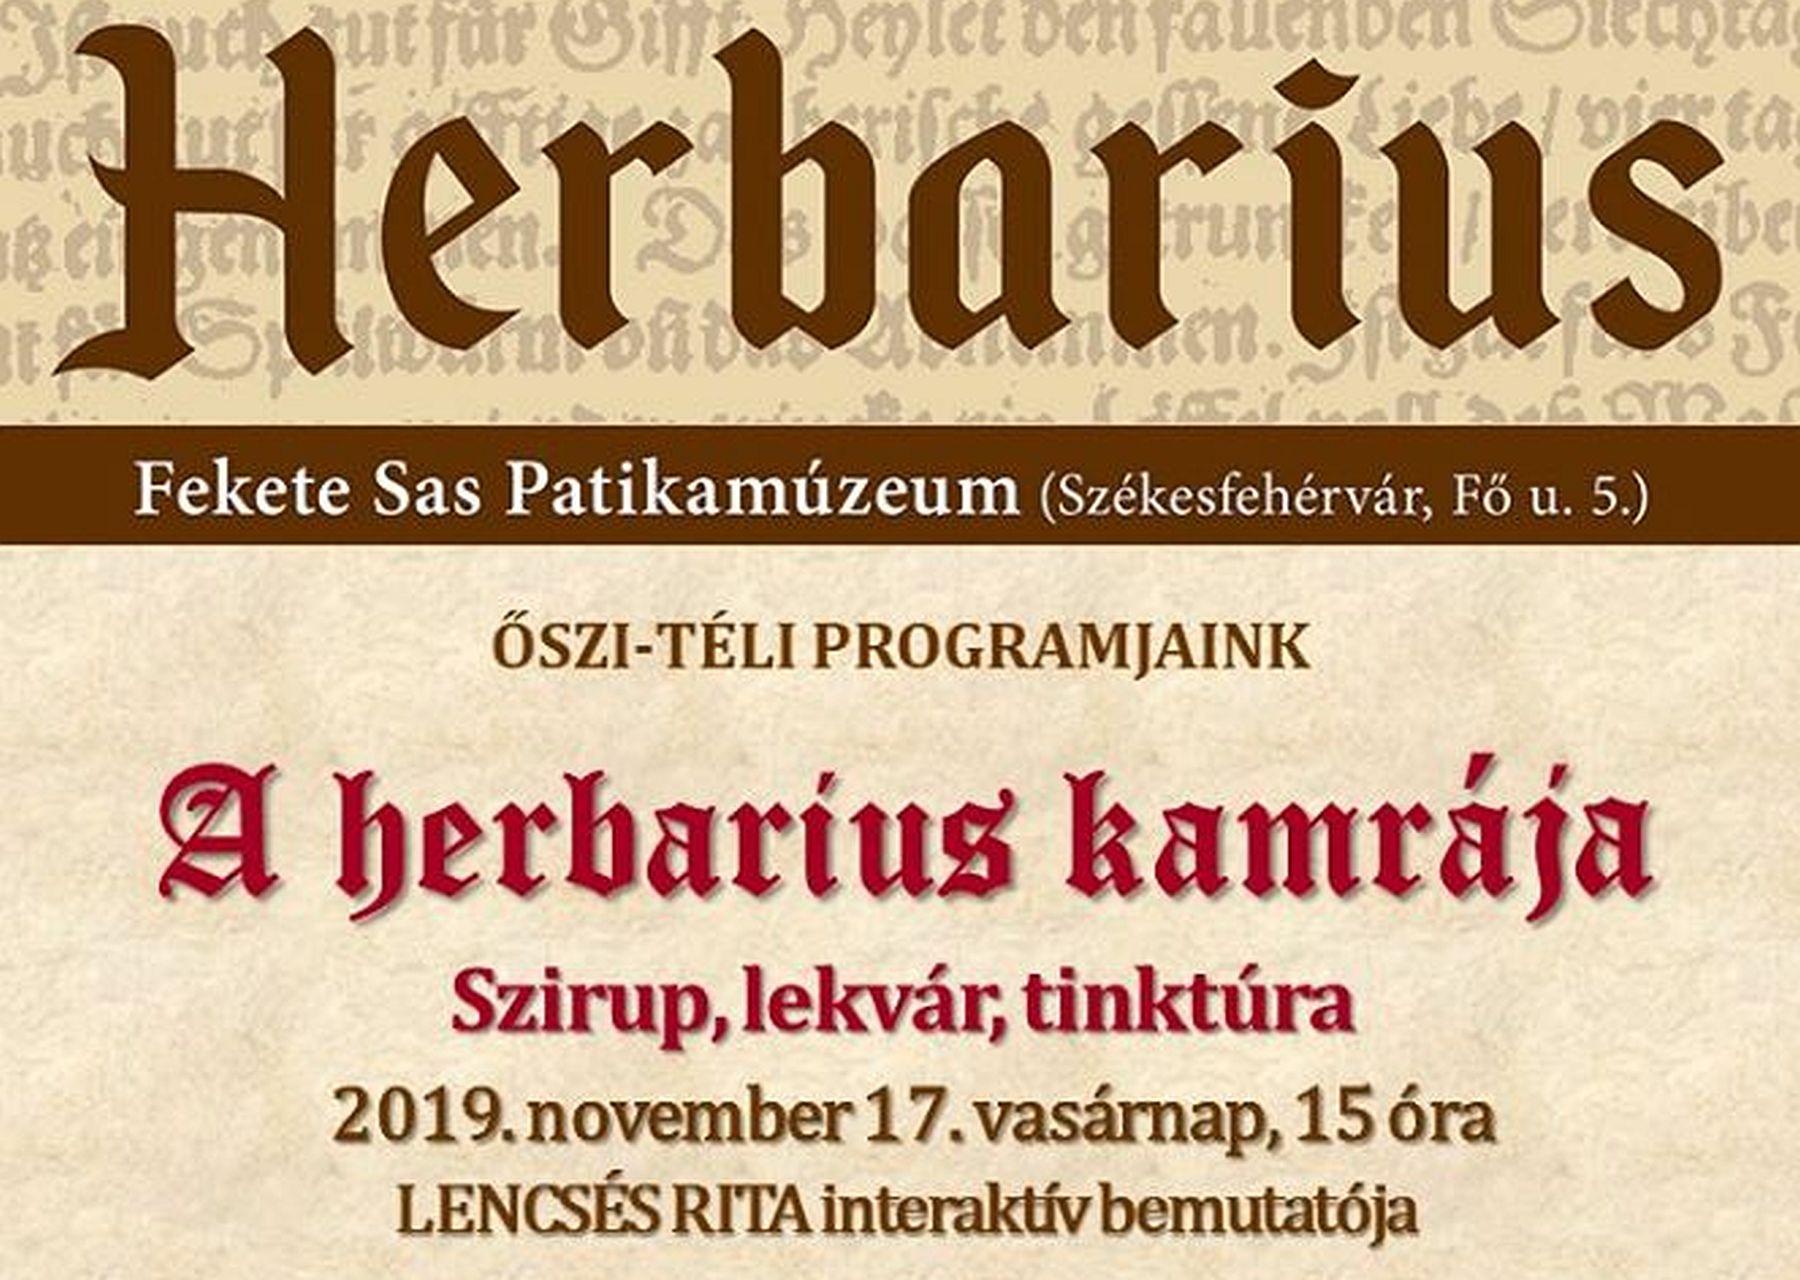 Szirupok, lekvárok és tinktúrák praktikái - vasárnap újra lesz Herbarius program